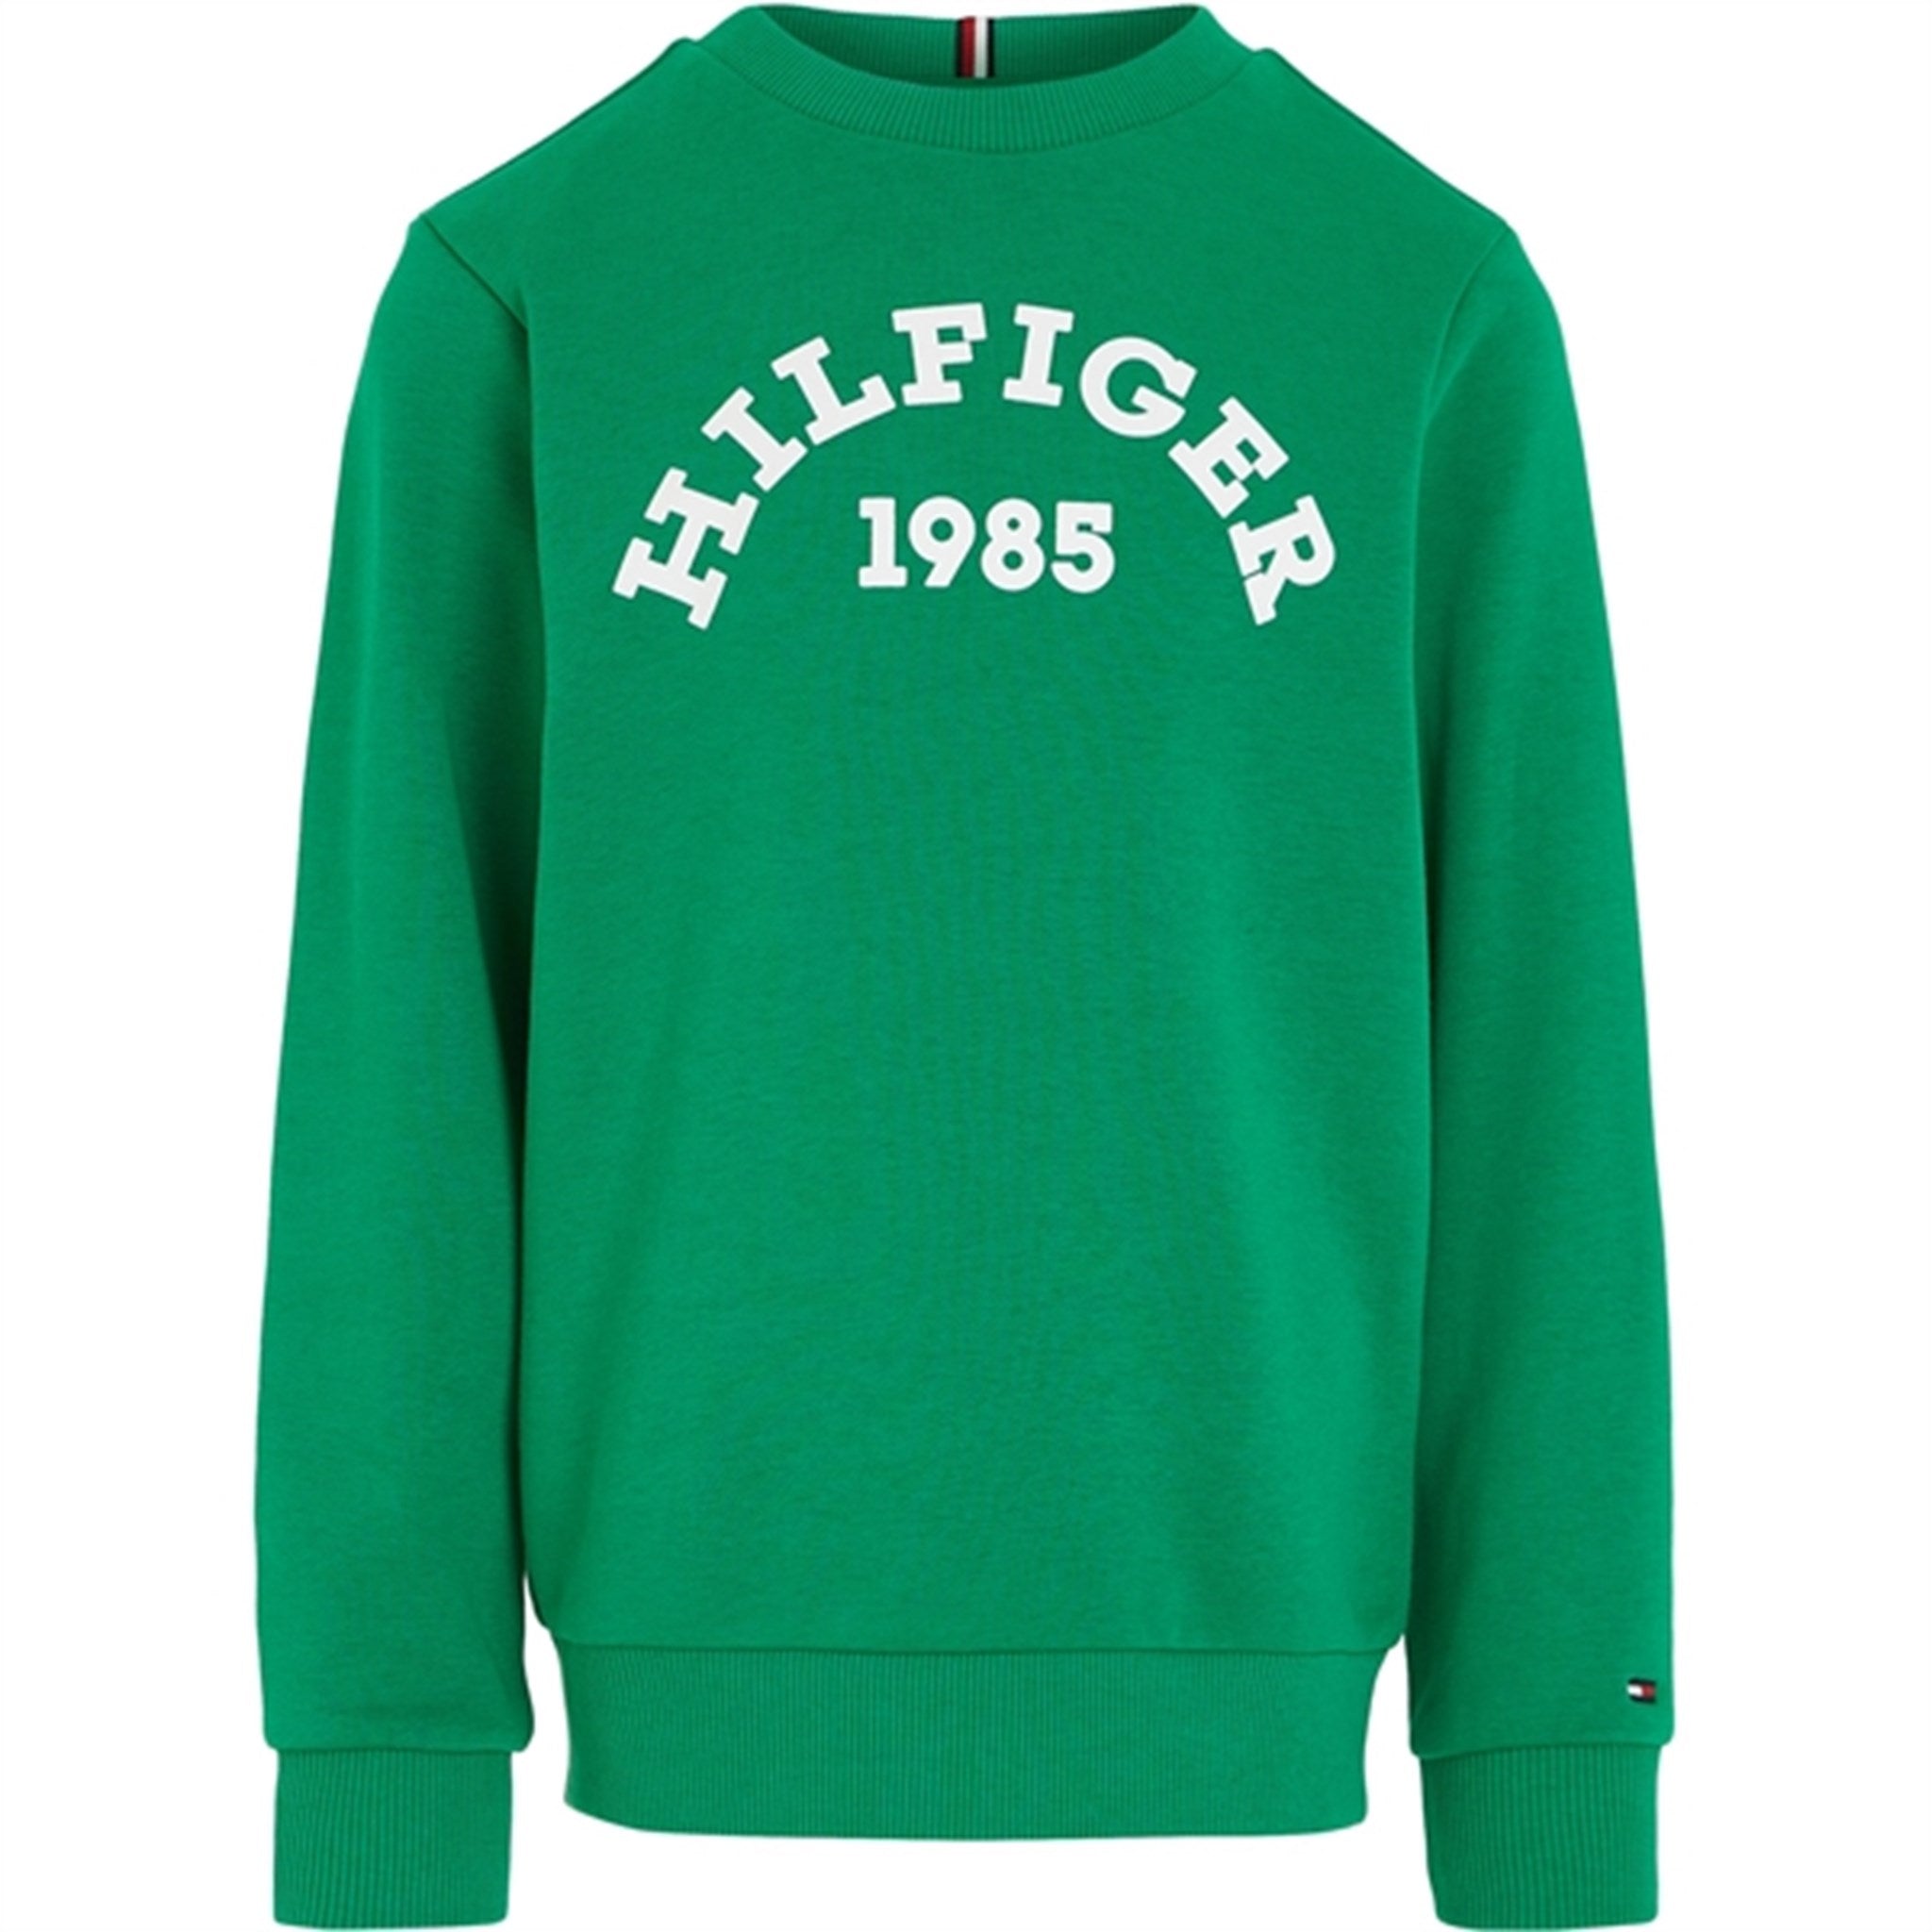 Tommy Hilfiger Hilfiger 1985 Sweatshirt Olympic Green